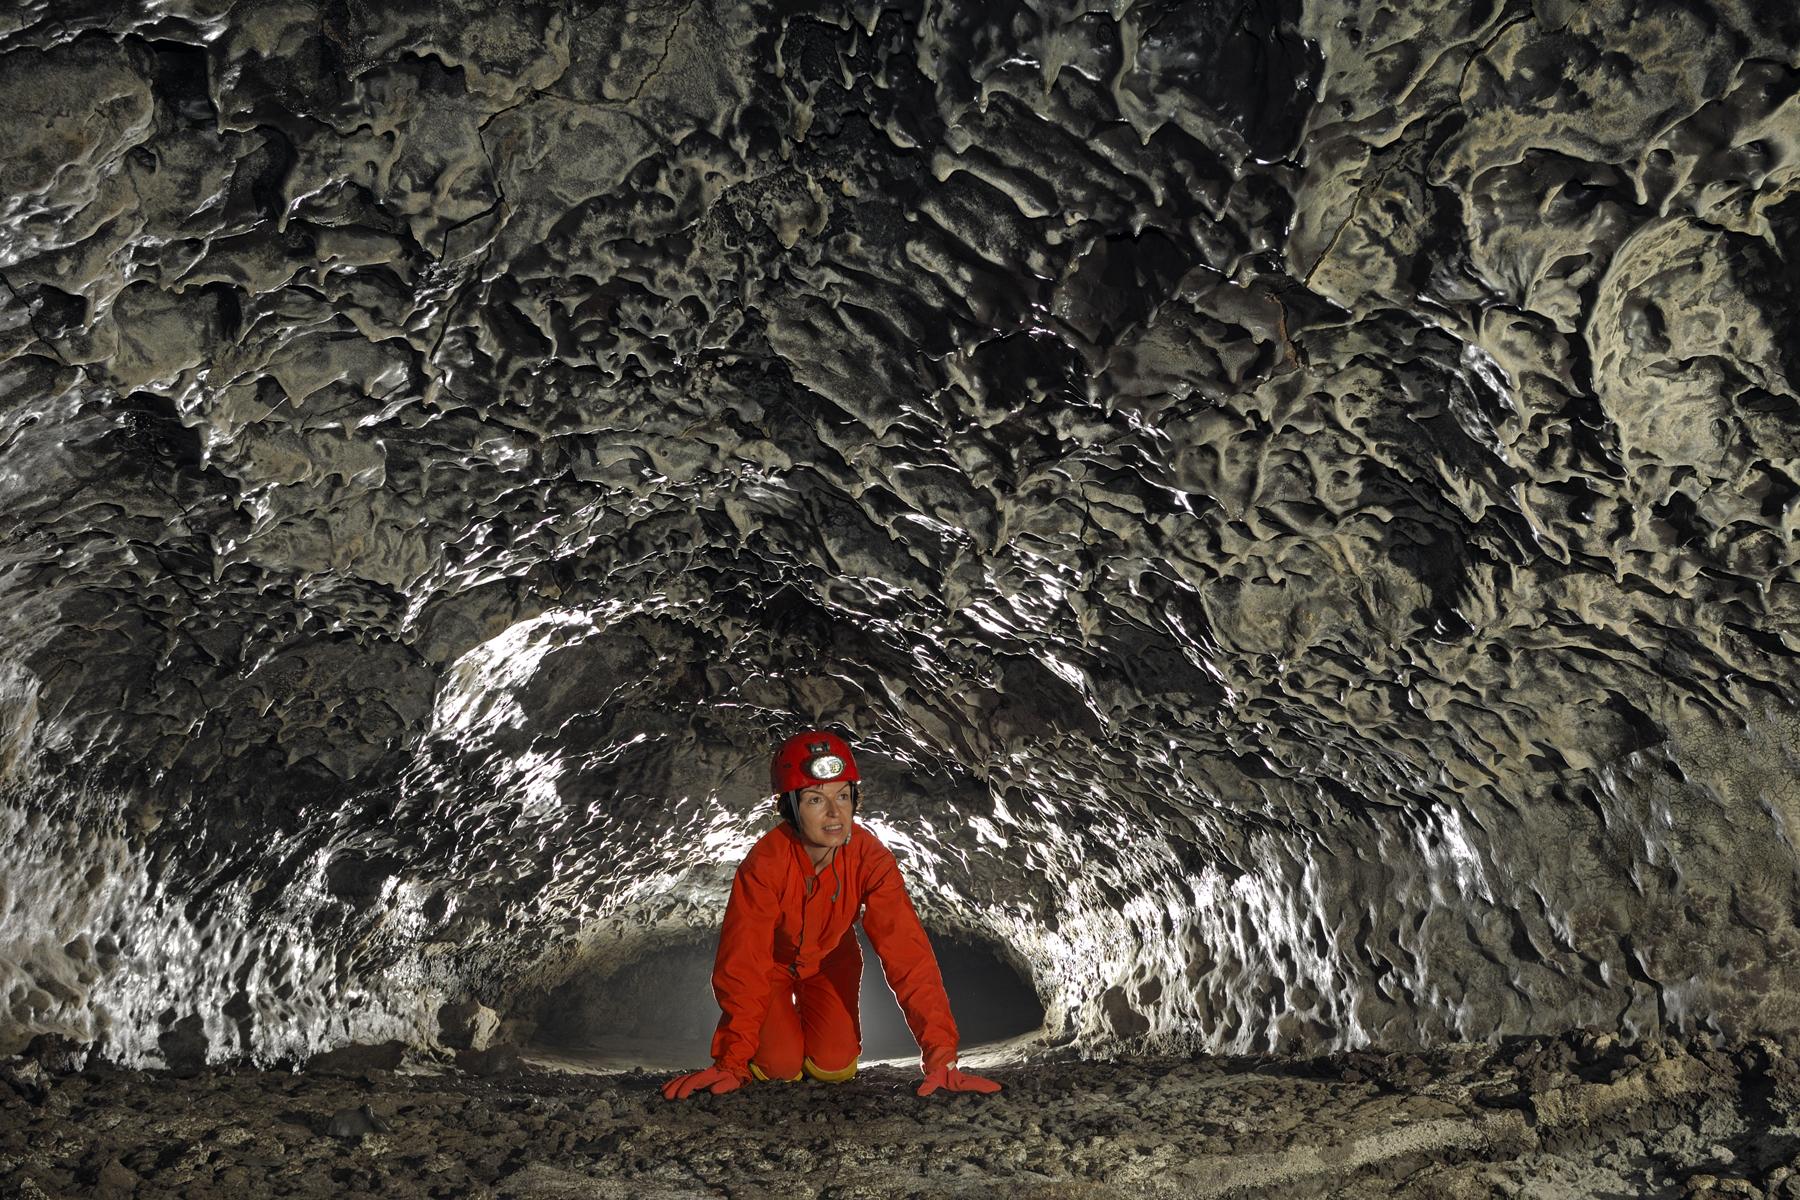 Hawaï (USA) - Tube de lave - Maelström Cave - Ramping dans une galerie basse avec "chocolate drops" au plafond